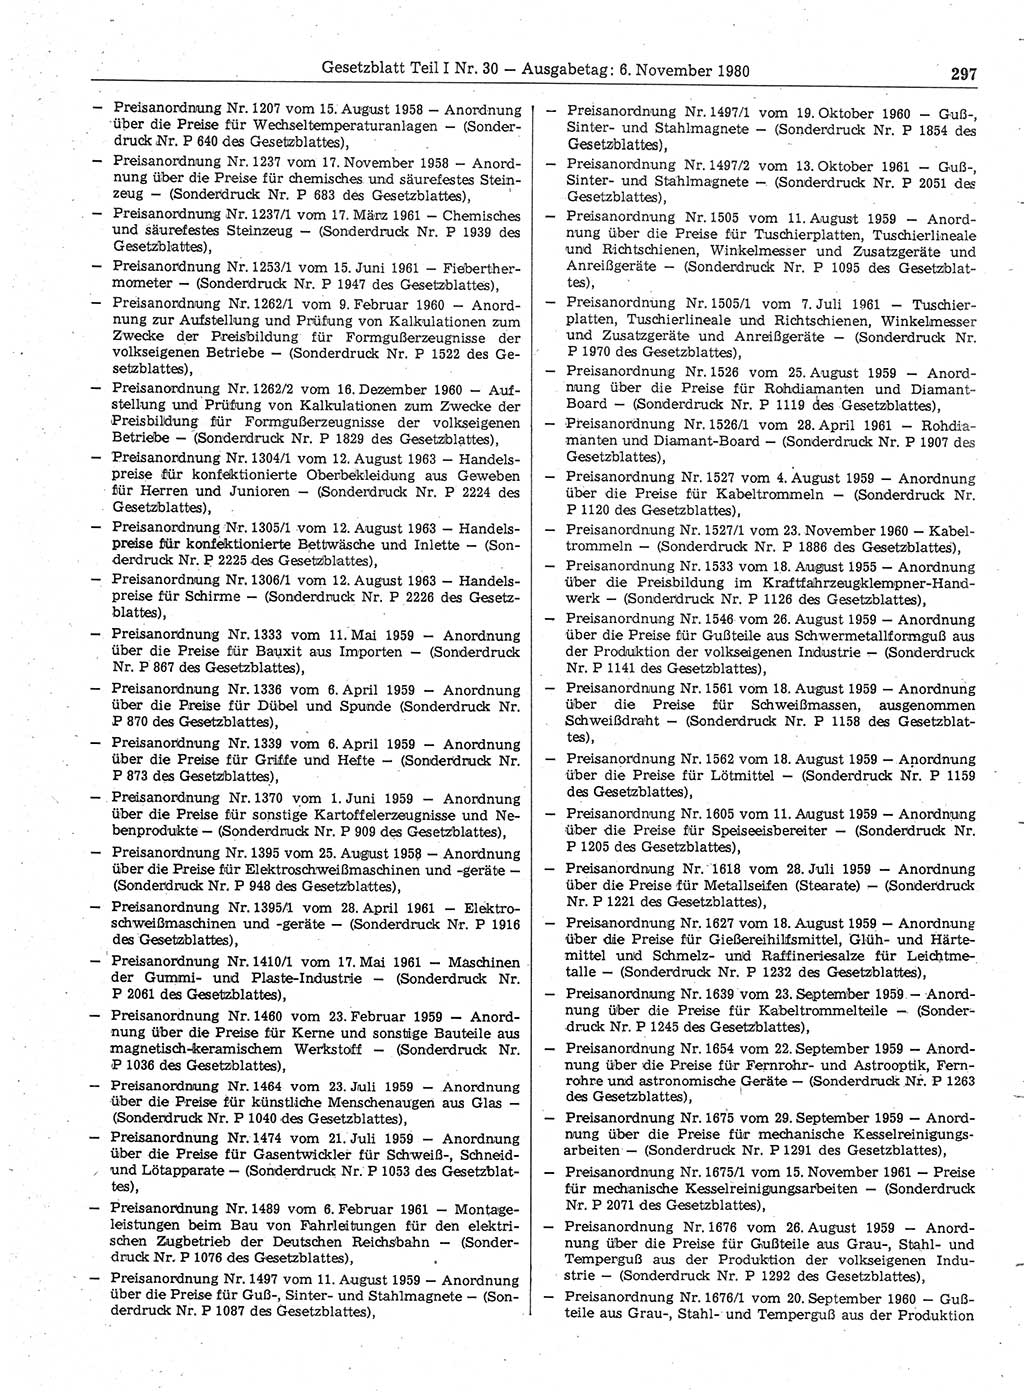 Gesetzblatt (GBl.) der Deutschen Demokratischen Republik (DDR) Teil Ⅰ 1980, Seite 297 (GBl. DDR Ⅰ 1980, S. 297)